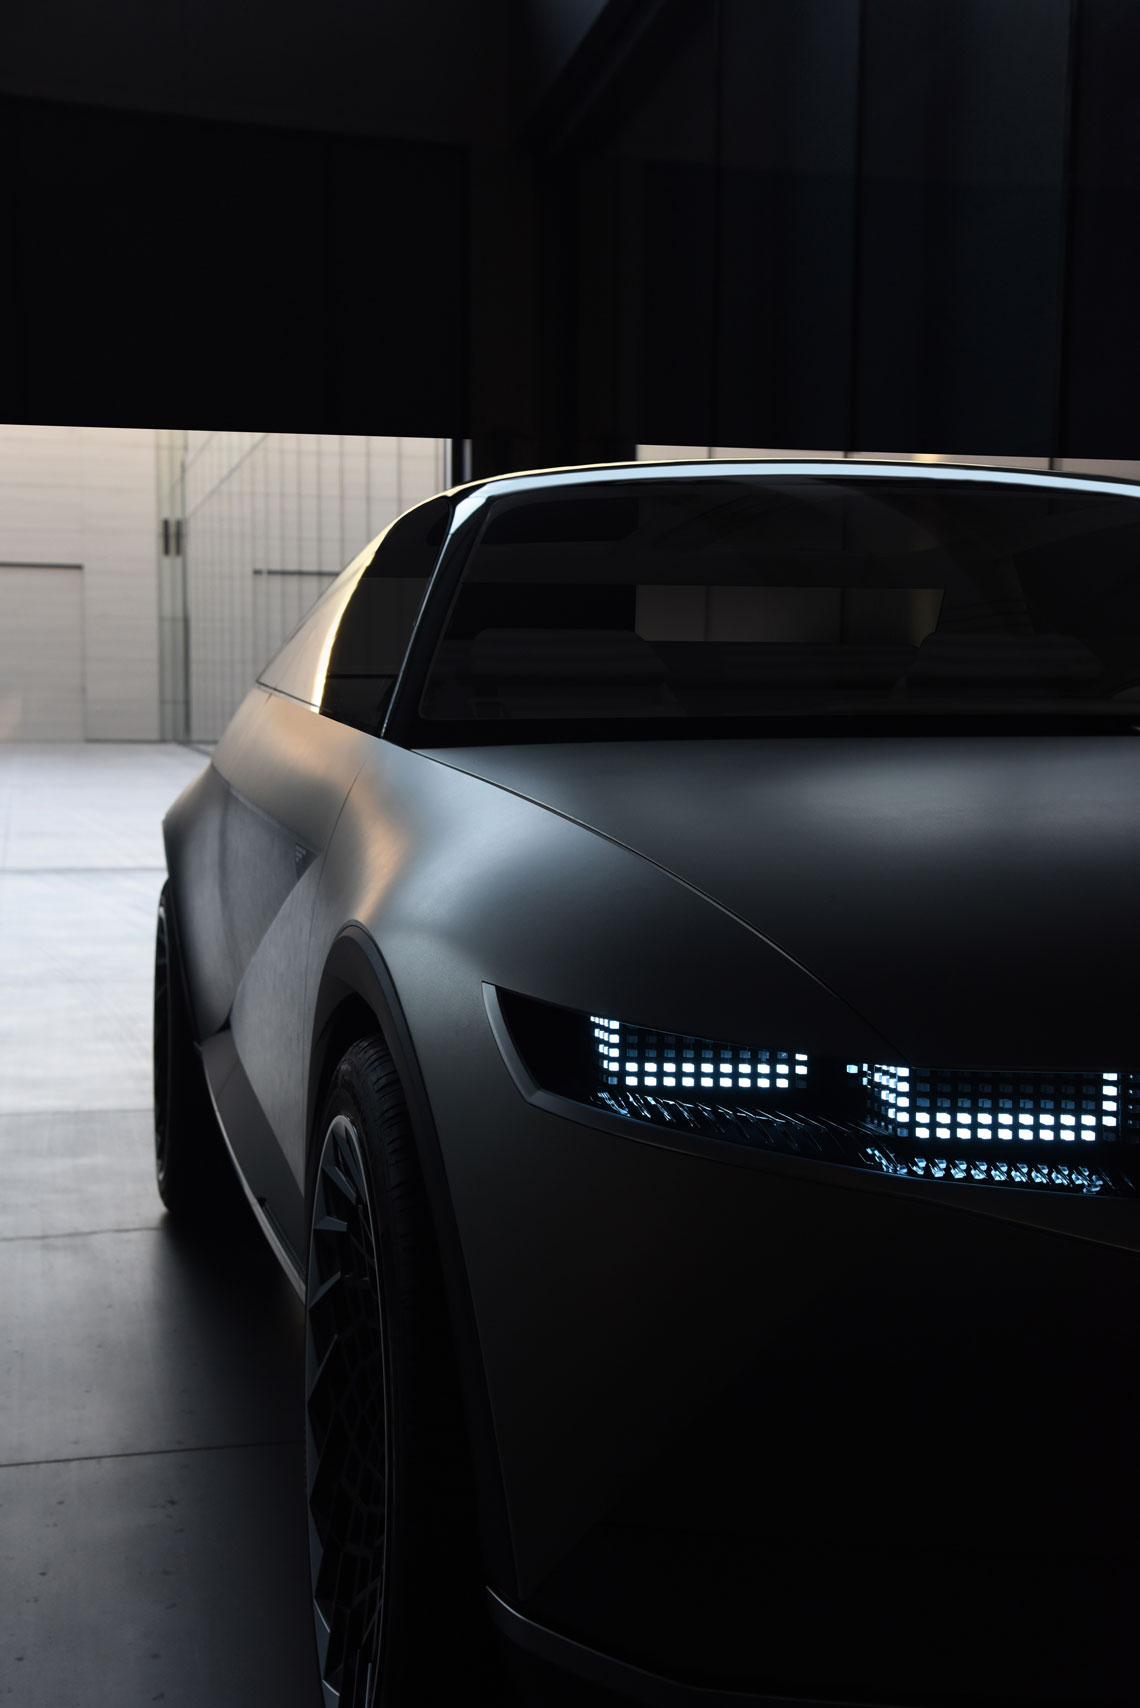 Het ontwerp van het Hyundai-verlichtingssysteem wordt naar een nieuw niveau getild. Aan de onderkant van de voordeuren zijn ingebouwde LED-batterij-indicatoren – de "status" is van veraf zichtbaar.